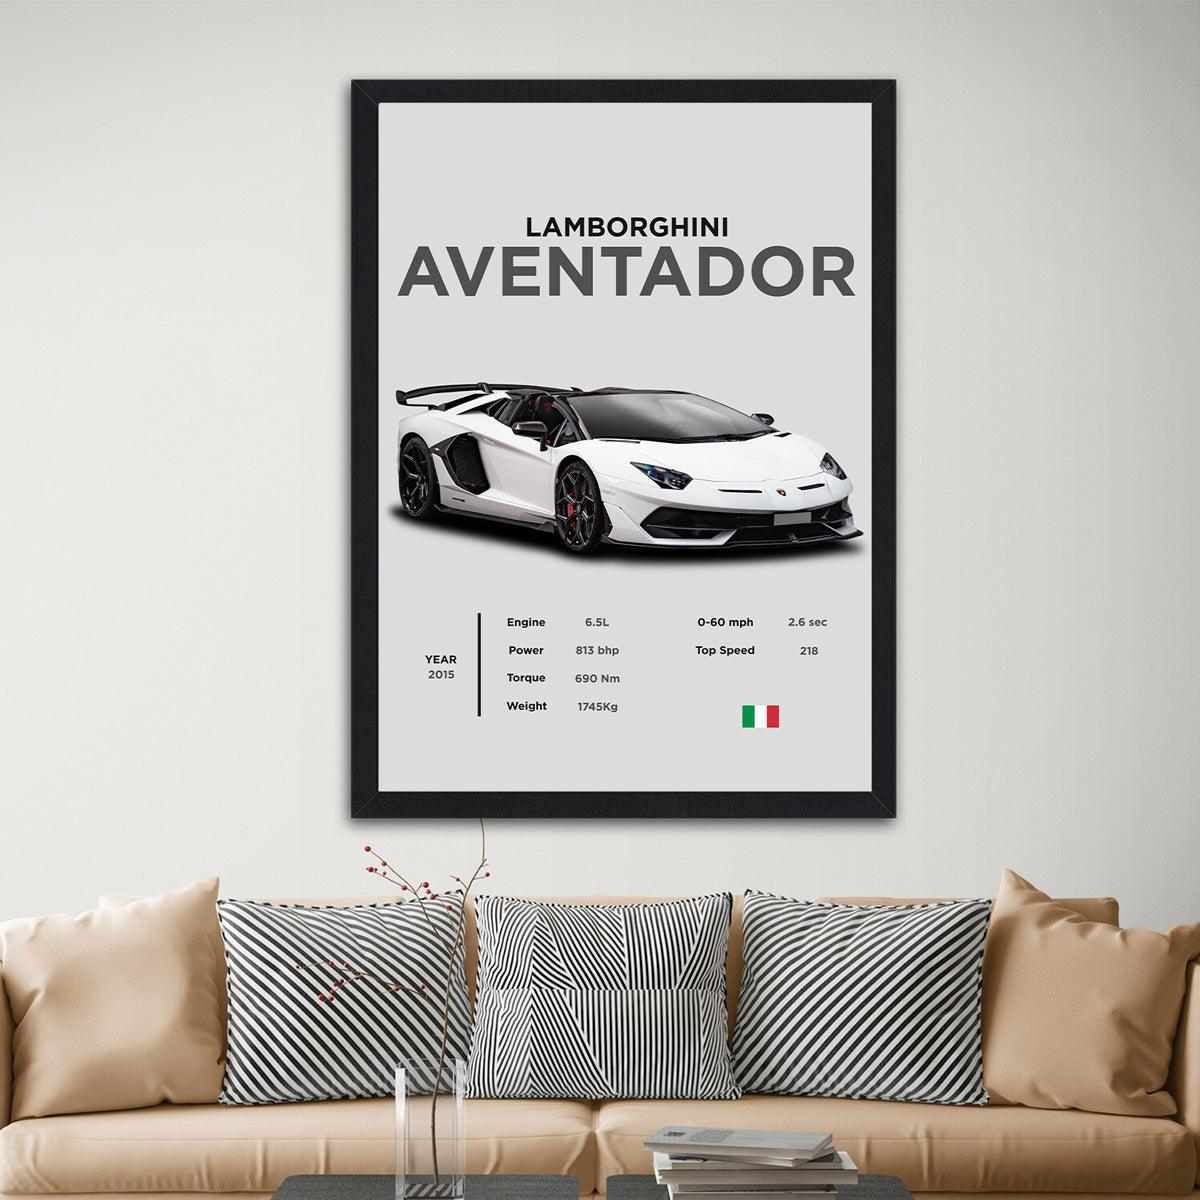 Lamborghini Aventador - Pinnacle of Power - PixMagic